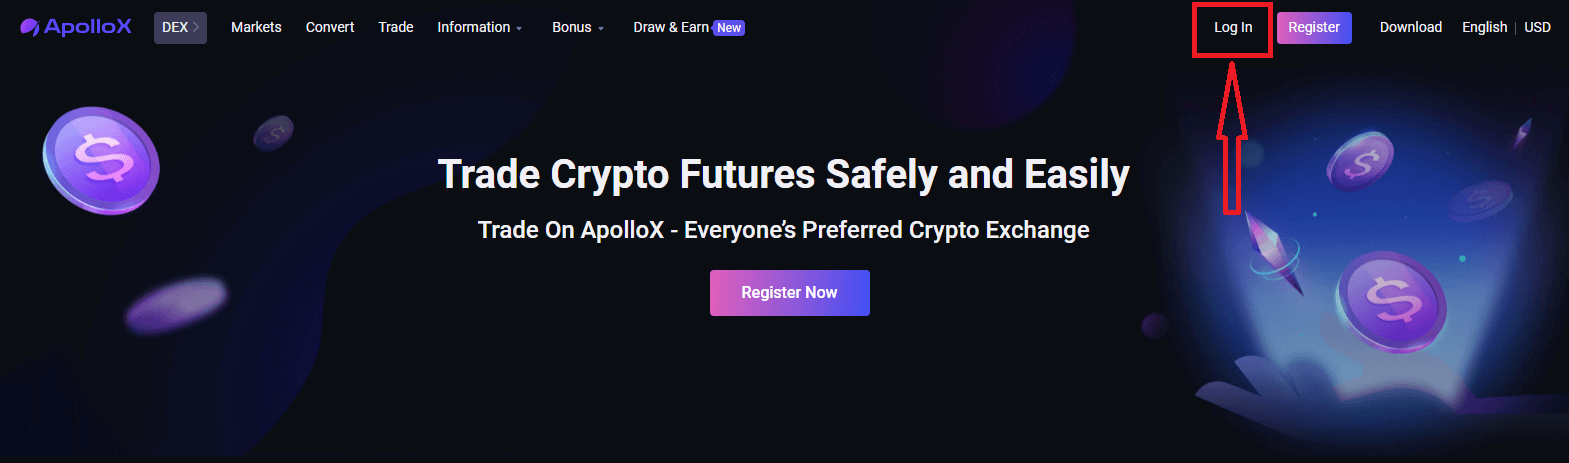 Cara Masuk dan mulai berdagang Crypto di ApolloX